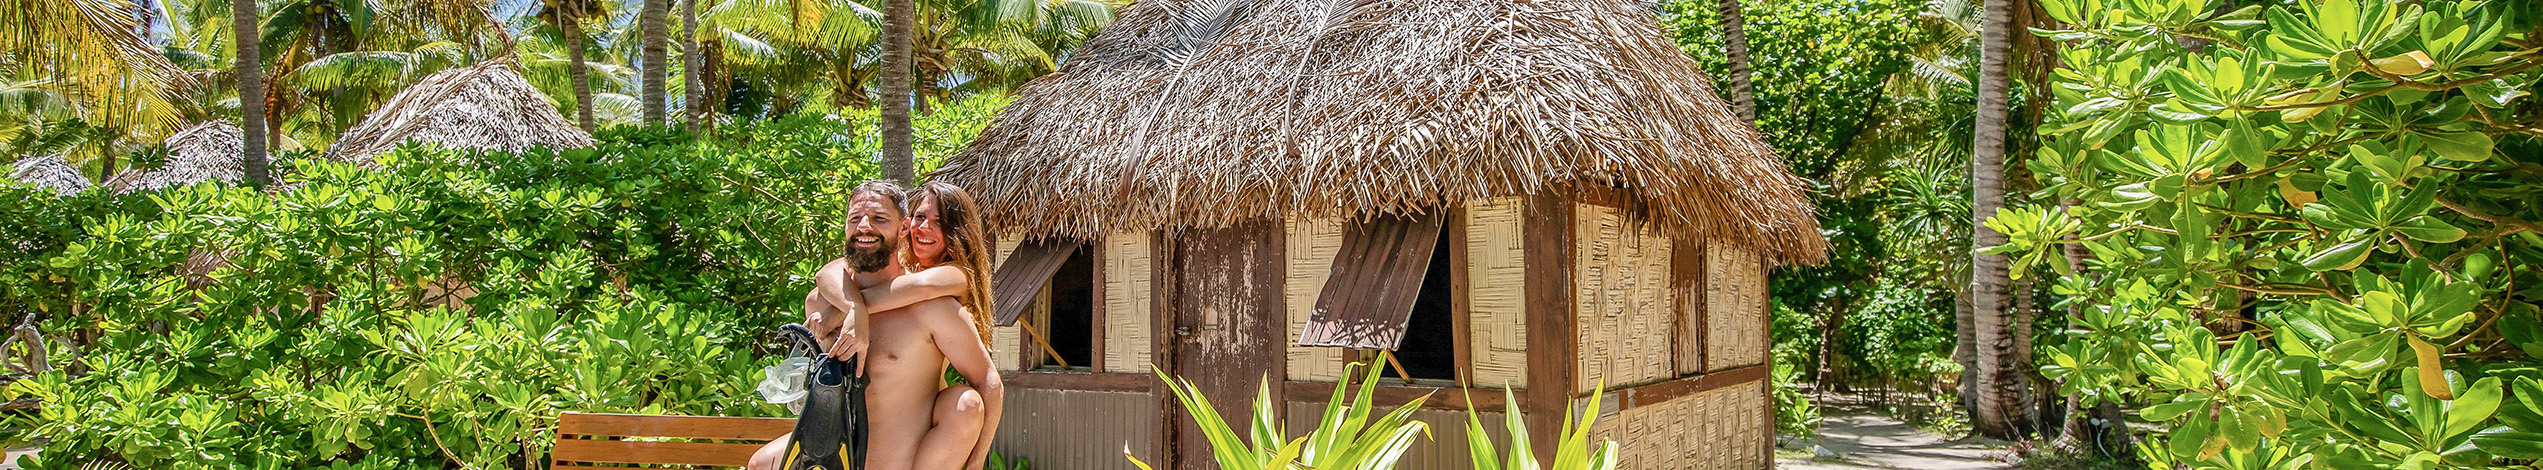 Tag med Jysk Rejsebureau på ø-hop til Fijis paradisøer